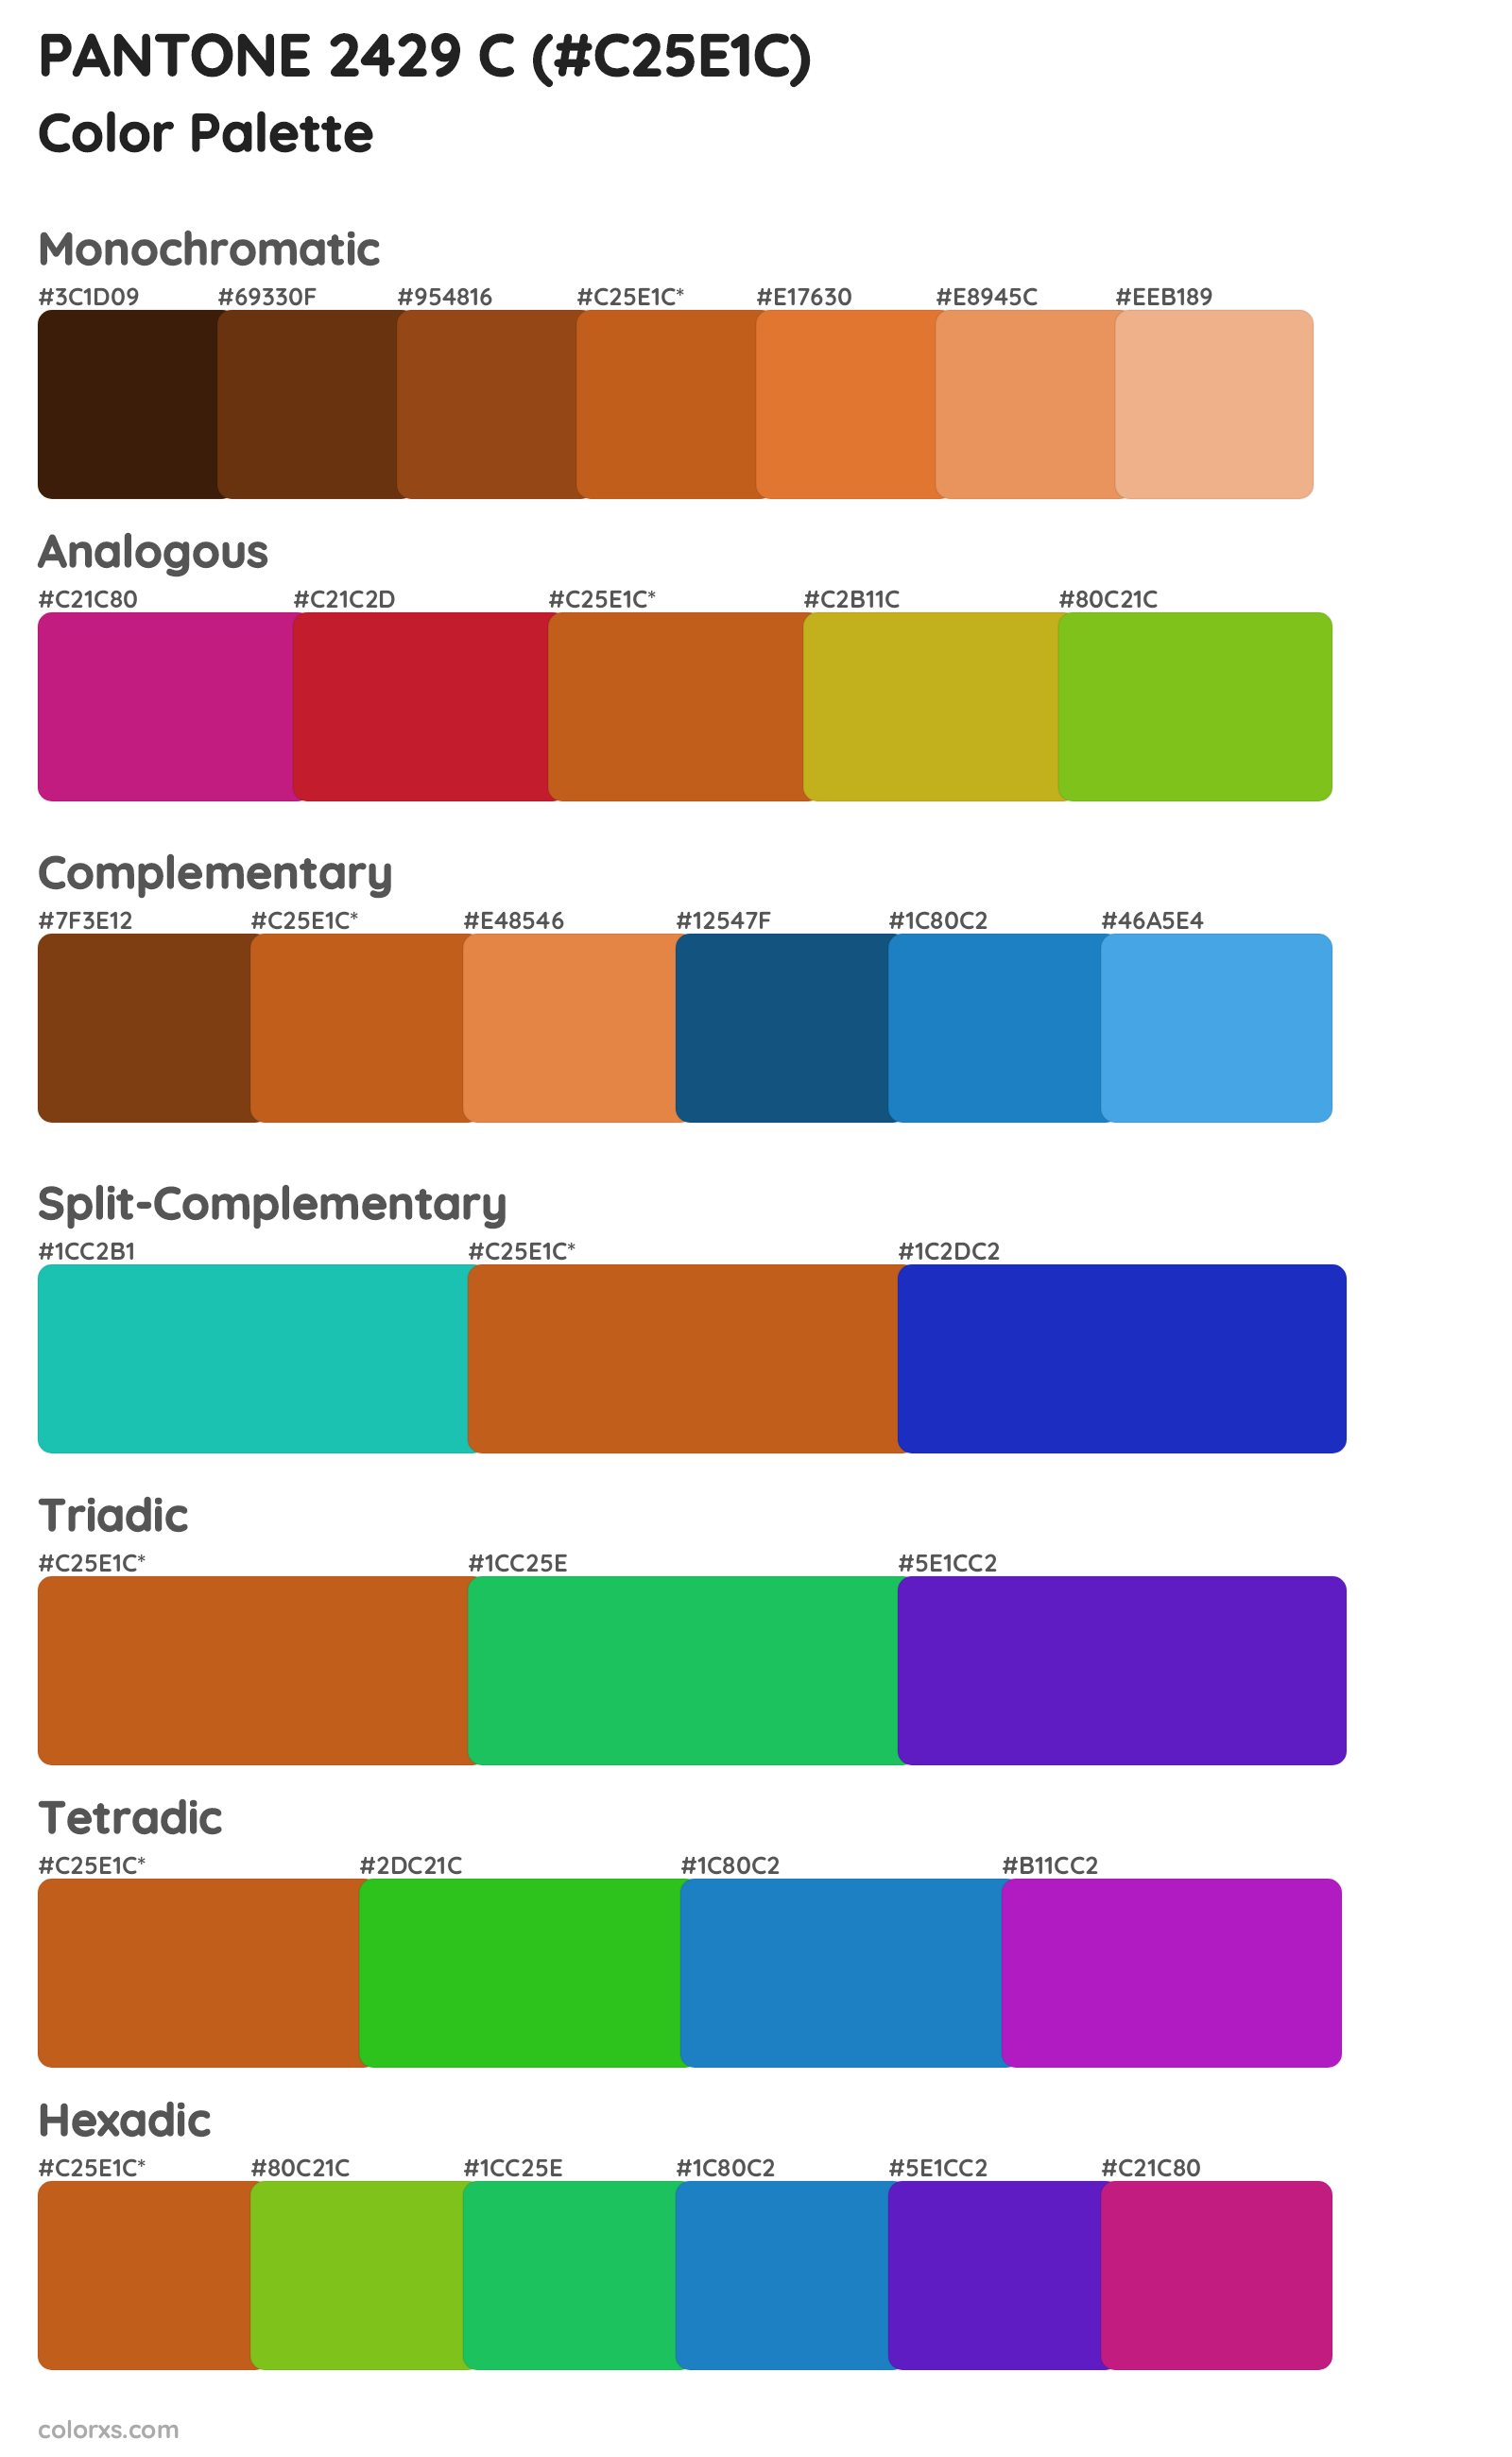 PANTONE 2429 C Color Scheme Palettes